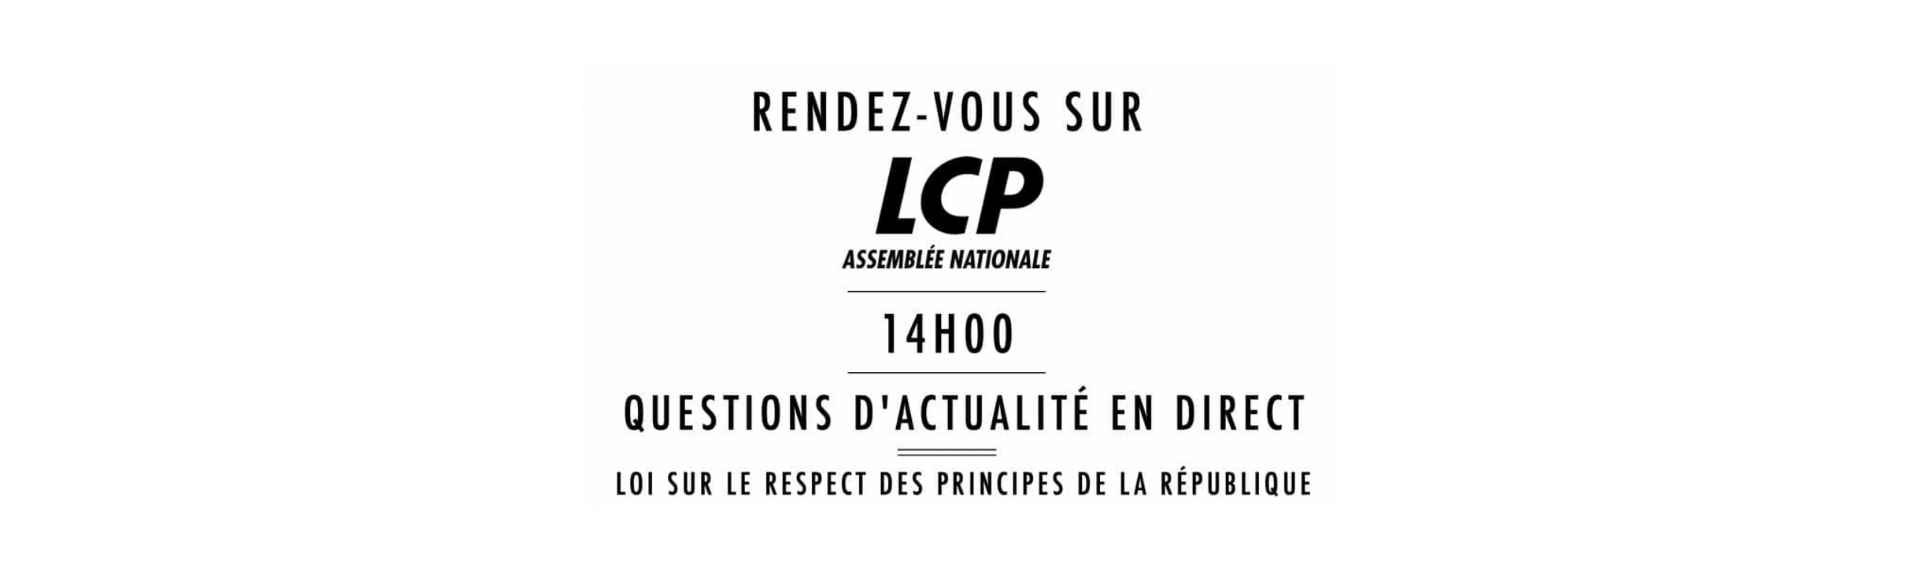 Interview en direct de François Cormier-Bouligeon sur LCP Assemblée nationale mardi 2 février 2021 à 14h00